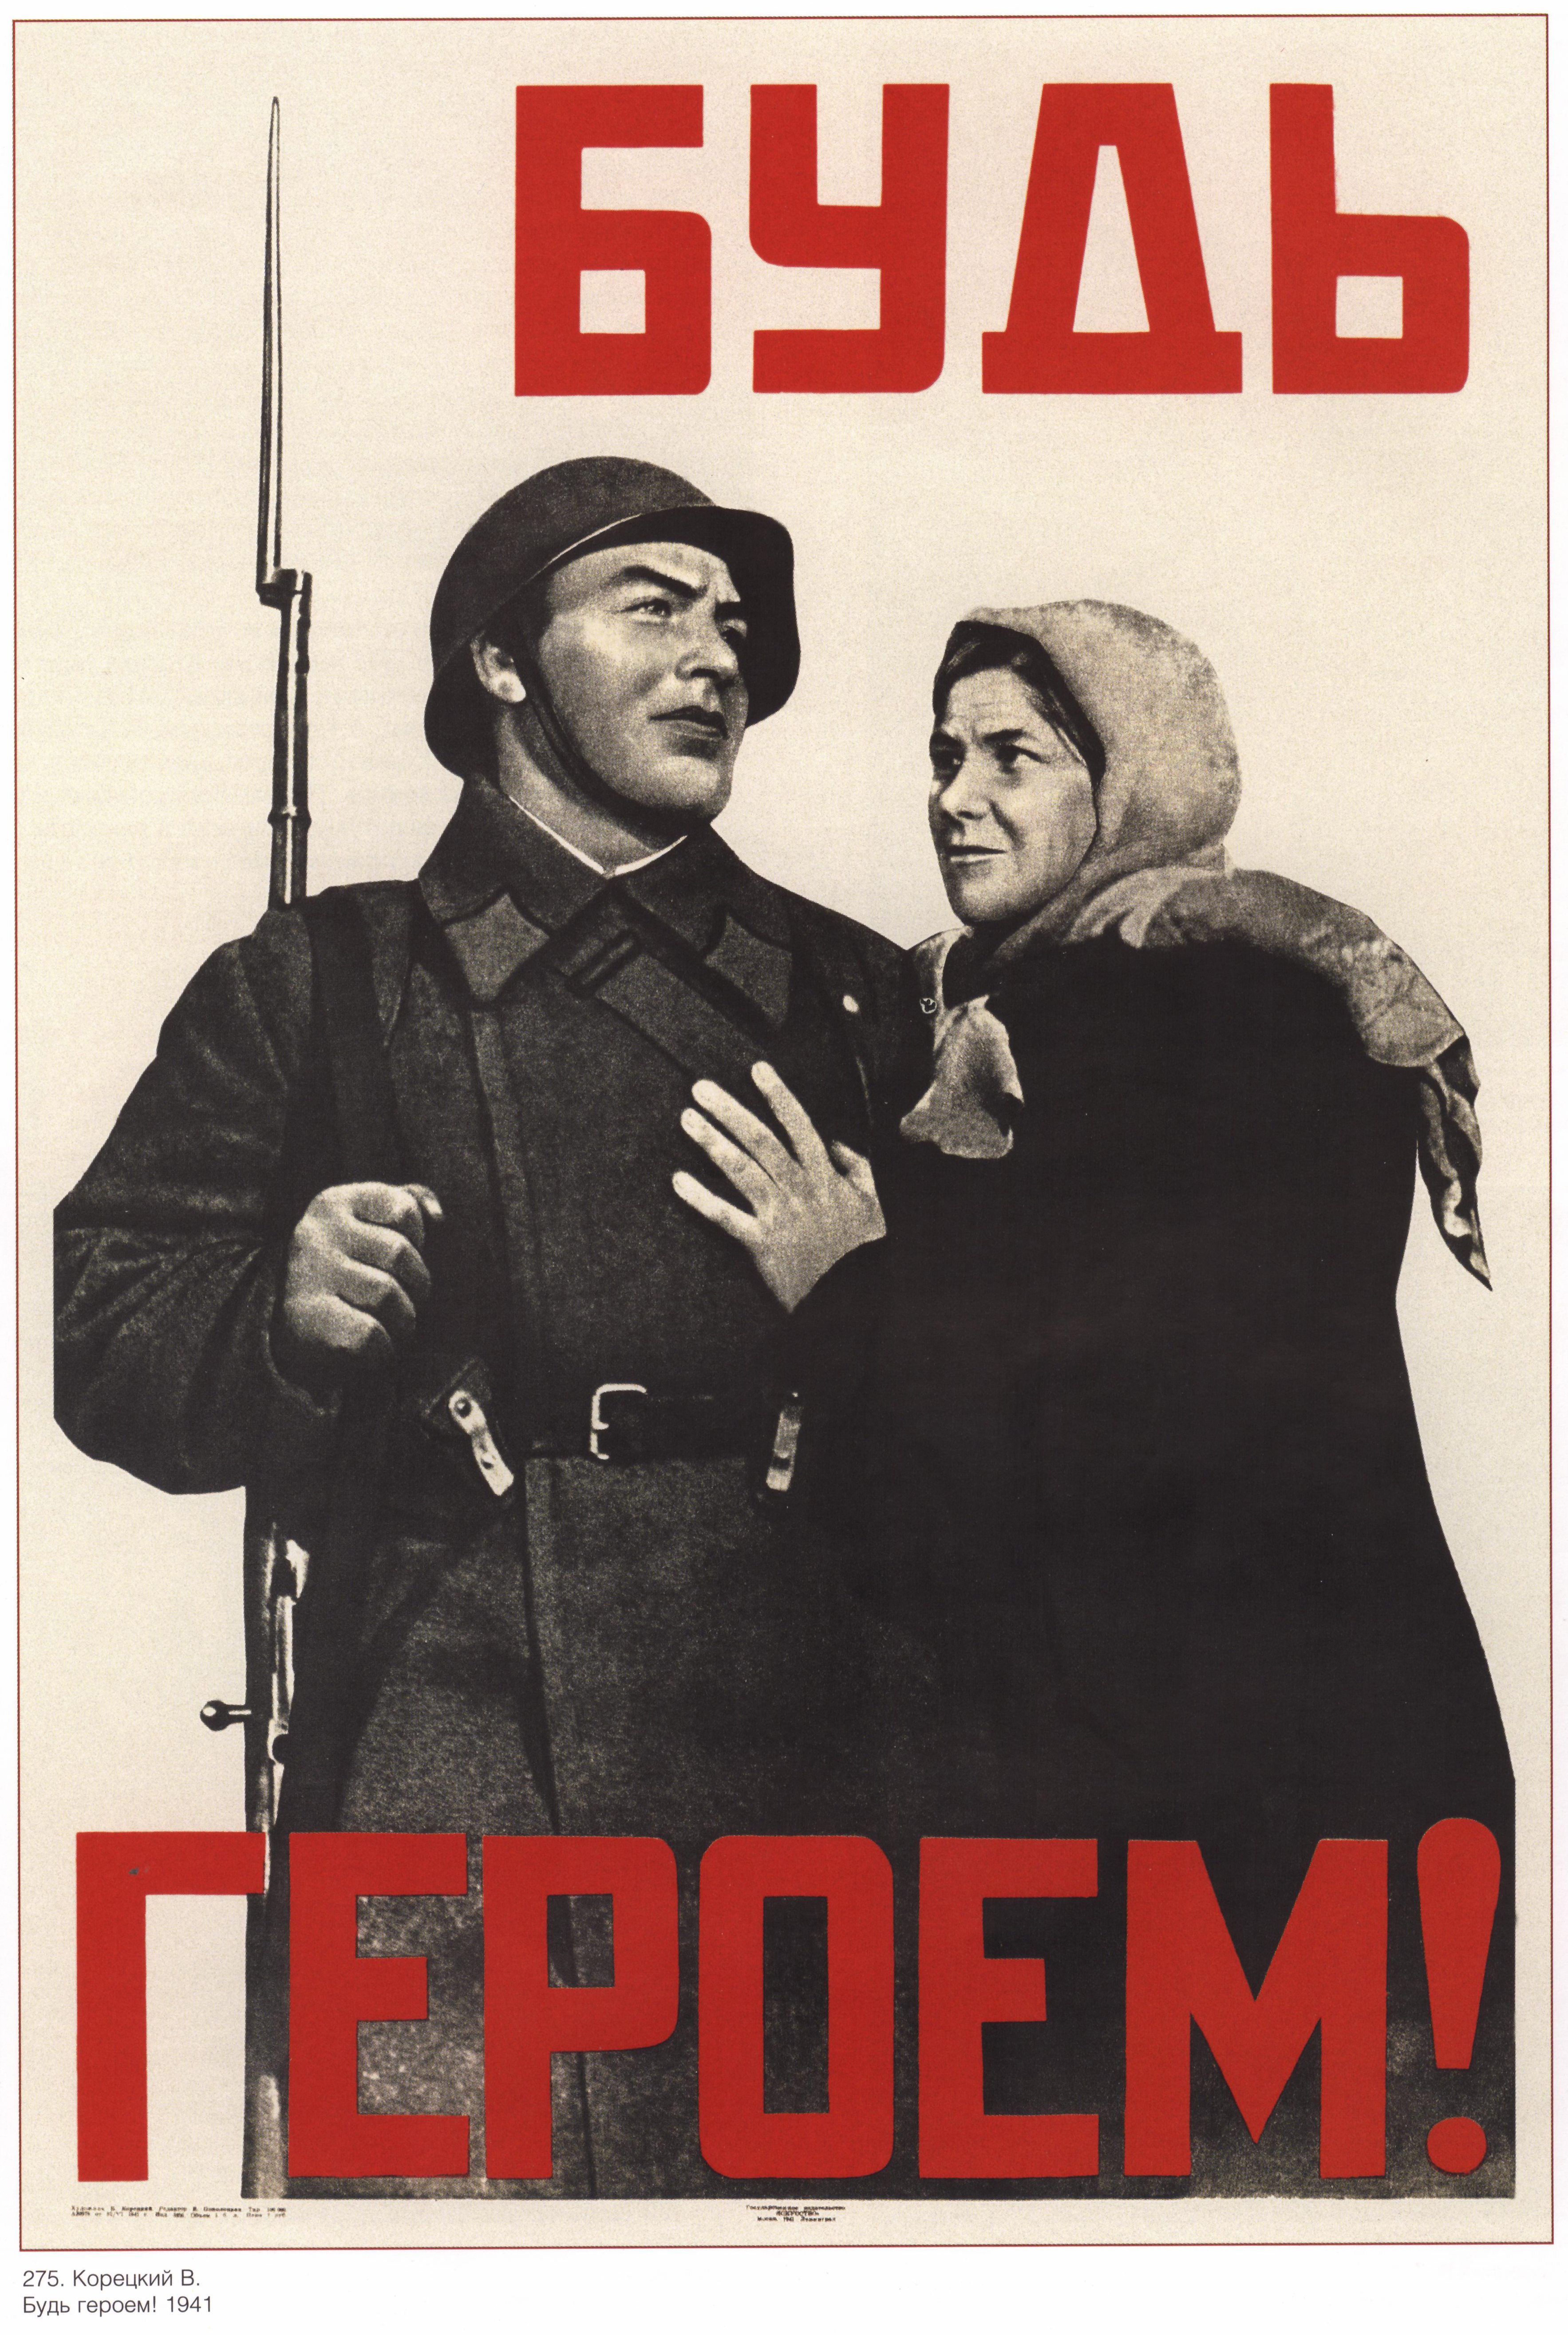 Великая отечественная лозунги. Плакат будь героем в Корецкий 1941 г. Советские военные плакаты. Плакаты времен войны. Советский плакат будь героем.